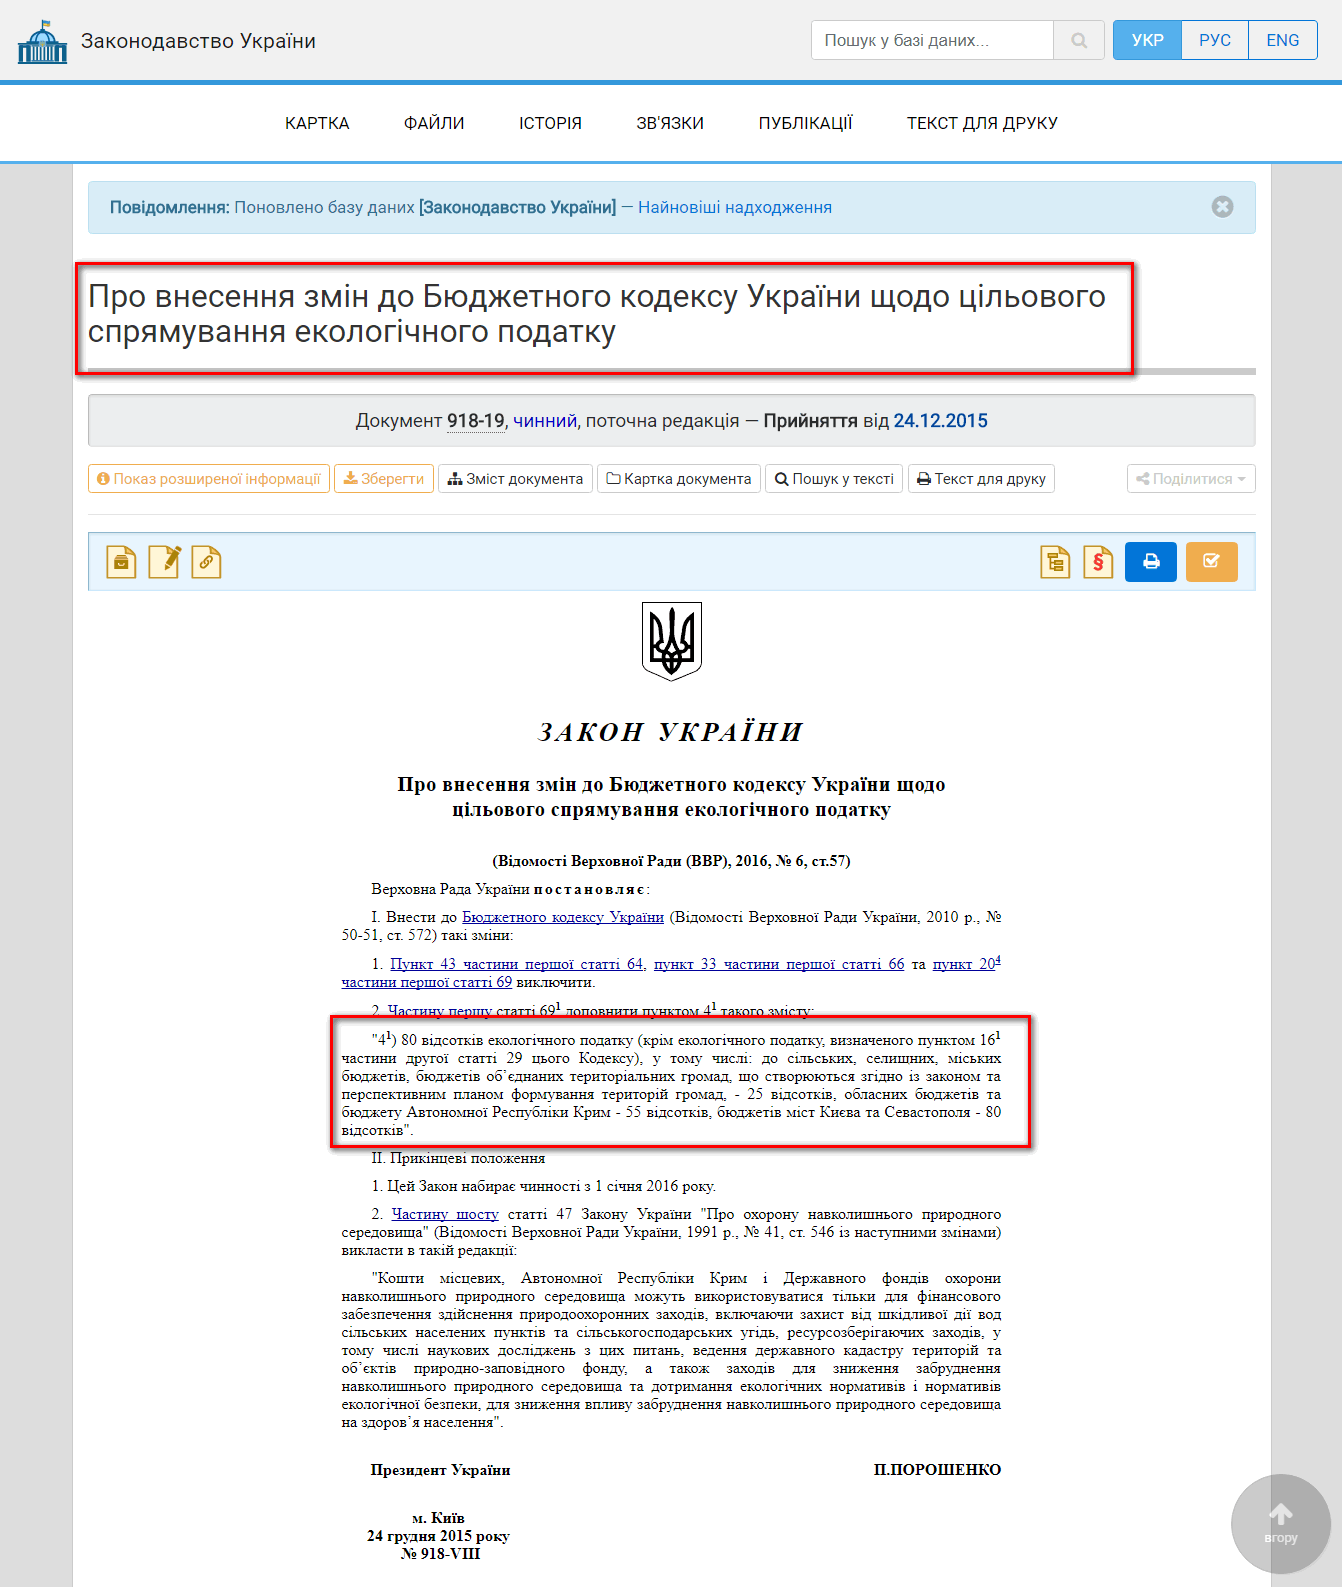 http://zakon2.rada.gov.ua/laws/show/918-19